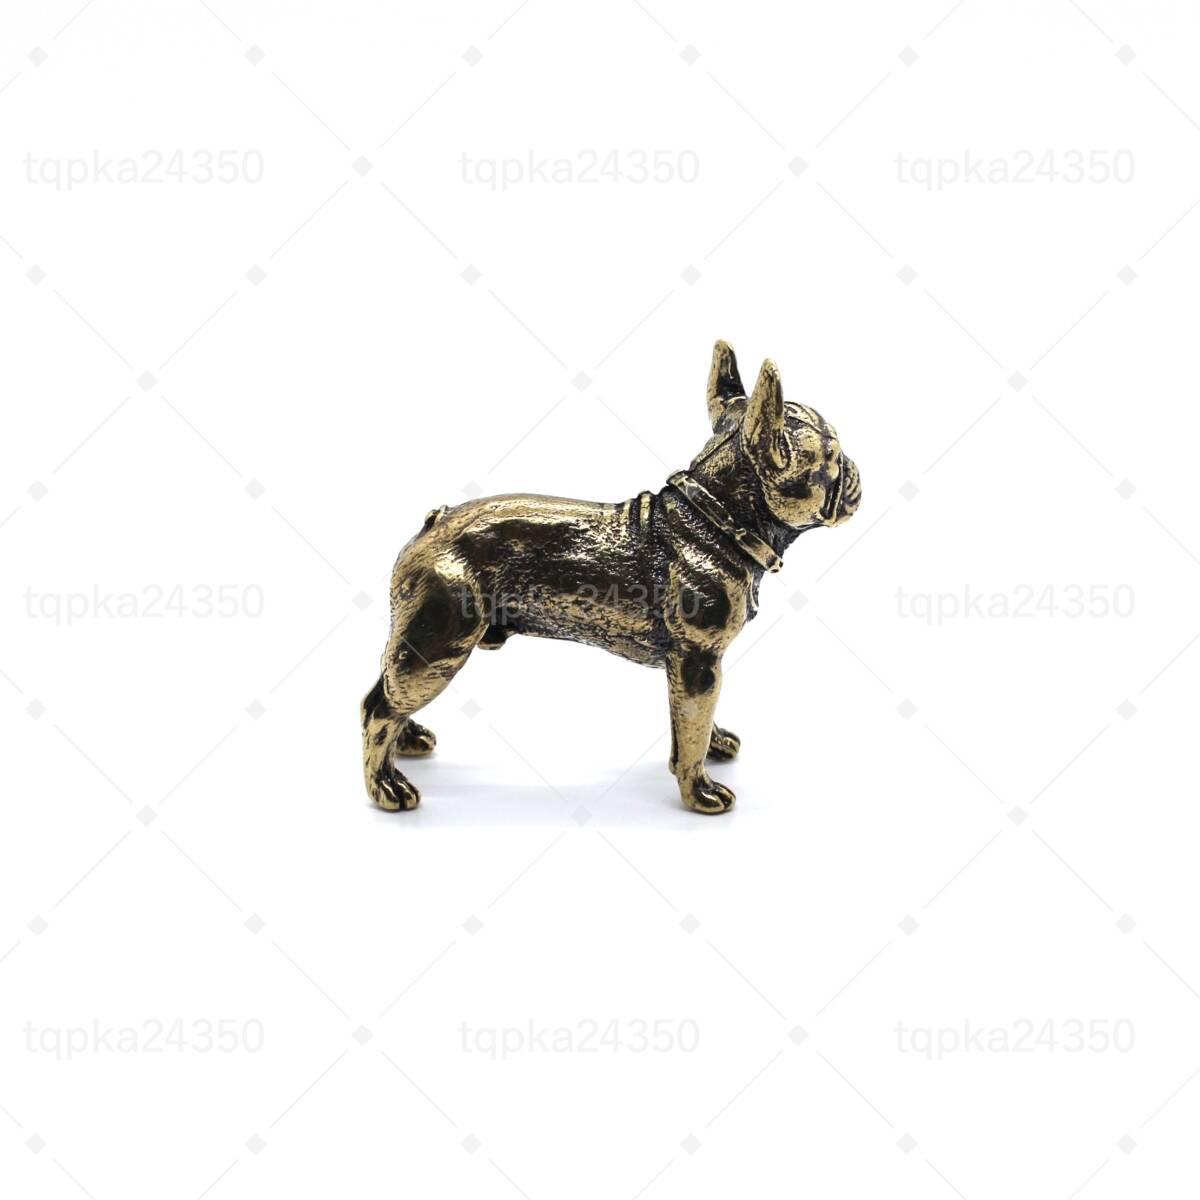 153g フレンチ・ブルドッグ いぬ イヌ 犬 パグ かわいい わんちゃん ペット dog 動物 金運 置物 ペーパーウェイト 真鍮 金属 銅製 fr153